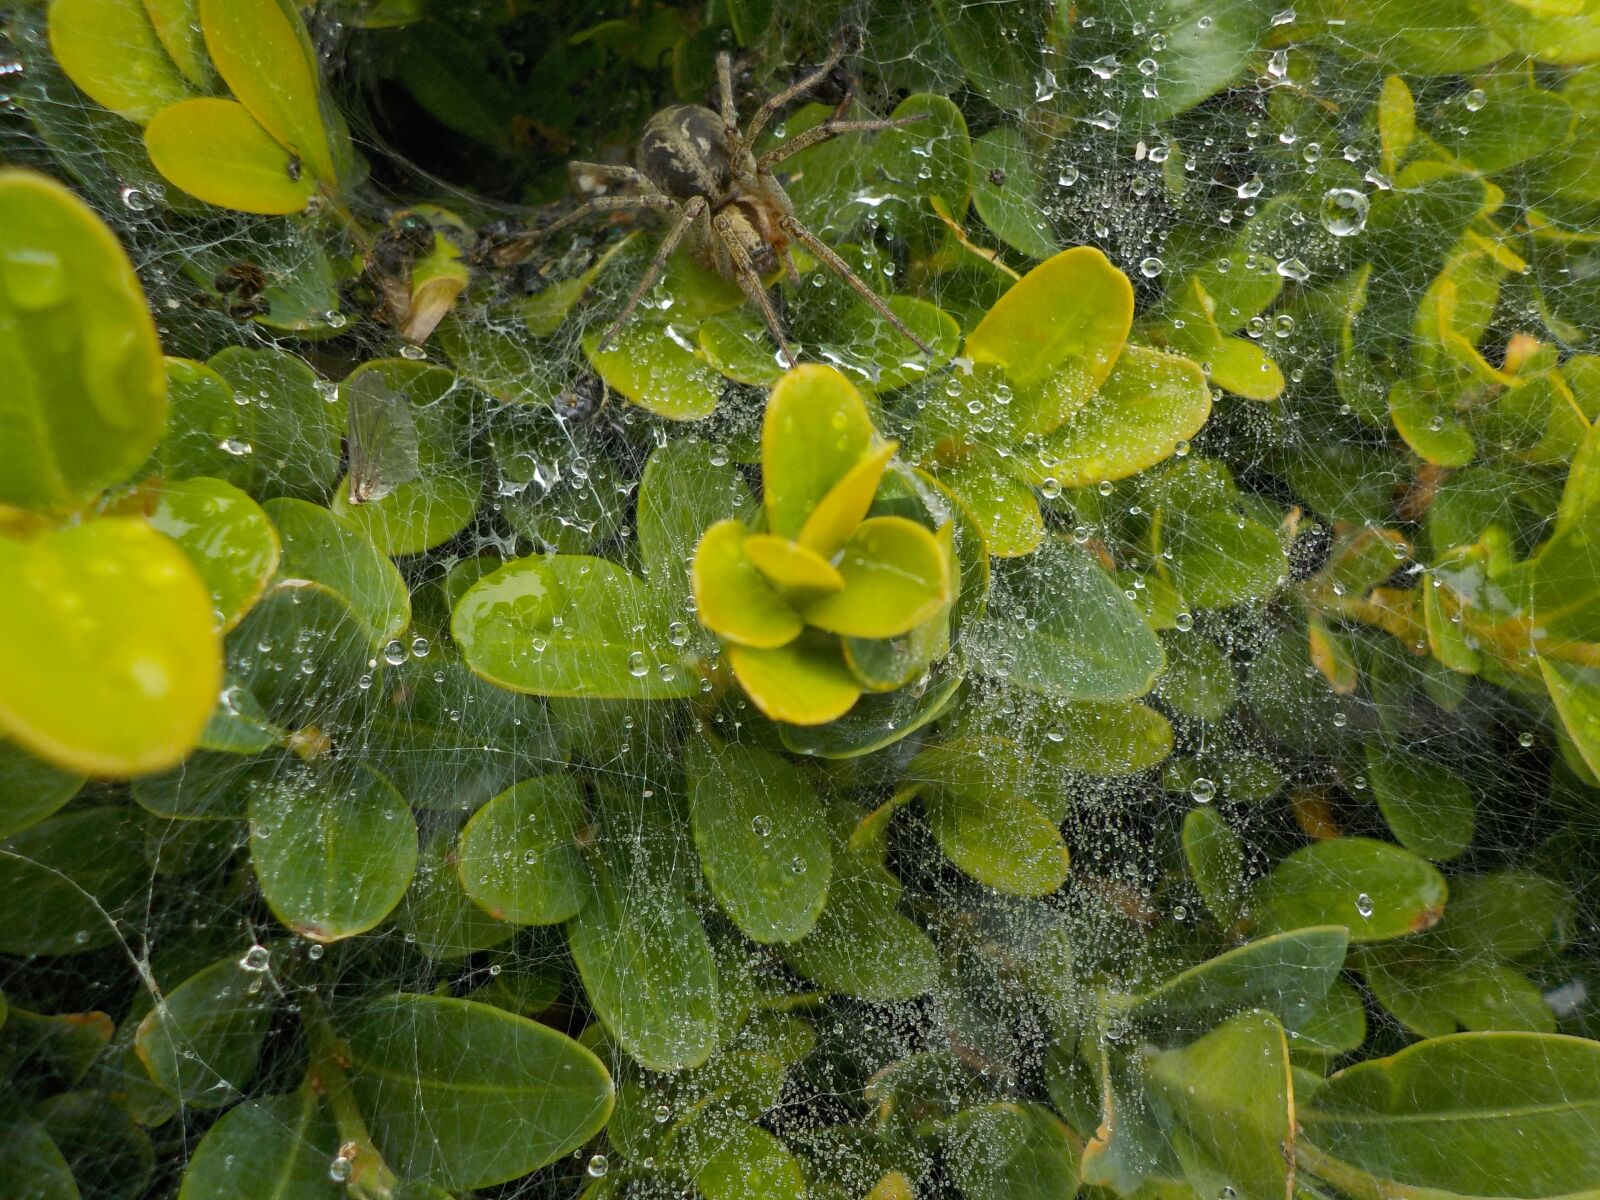 Nikon Coolpix S32 sample photo. Spider, garden, cobweb photography